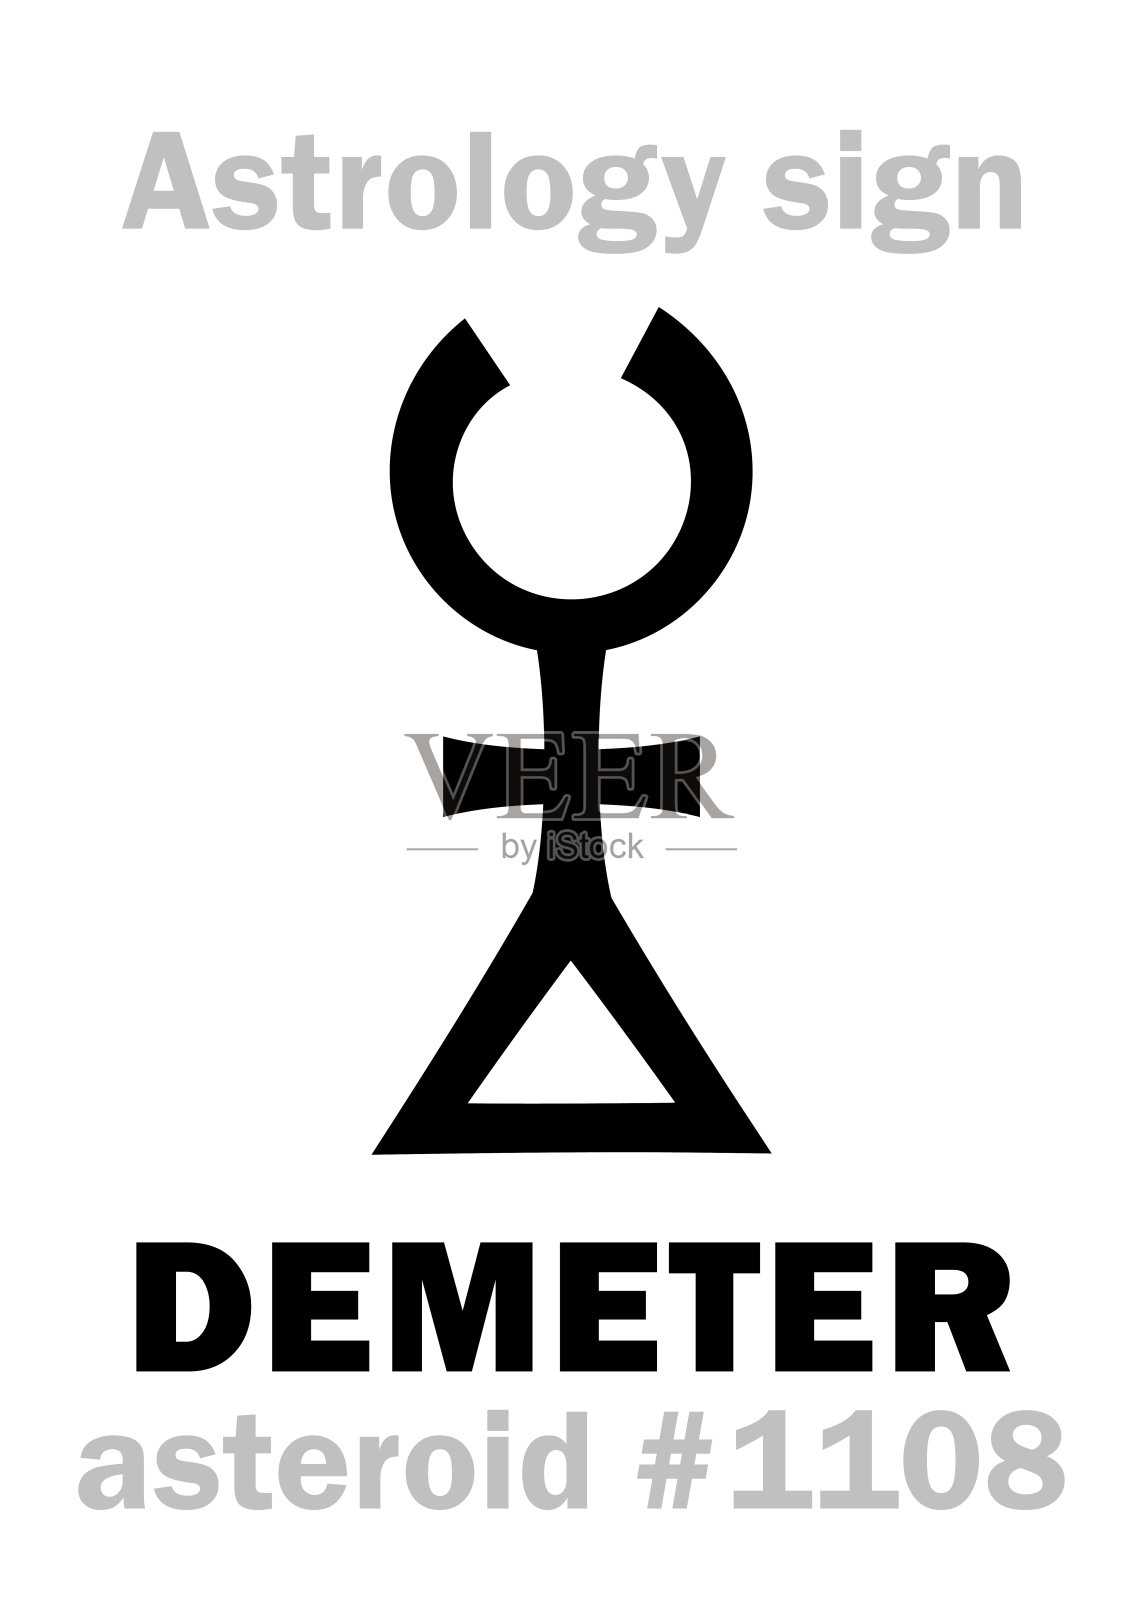 占星字母表:DEMETER，小行星#1108。象形文字符号(单符号)。插画图片素材